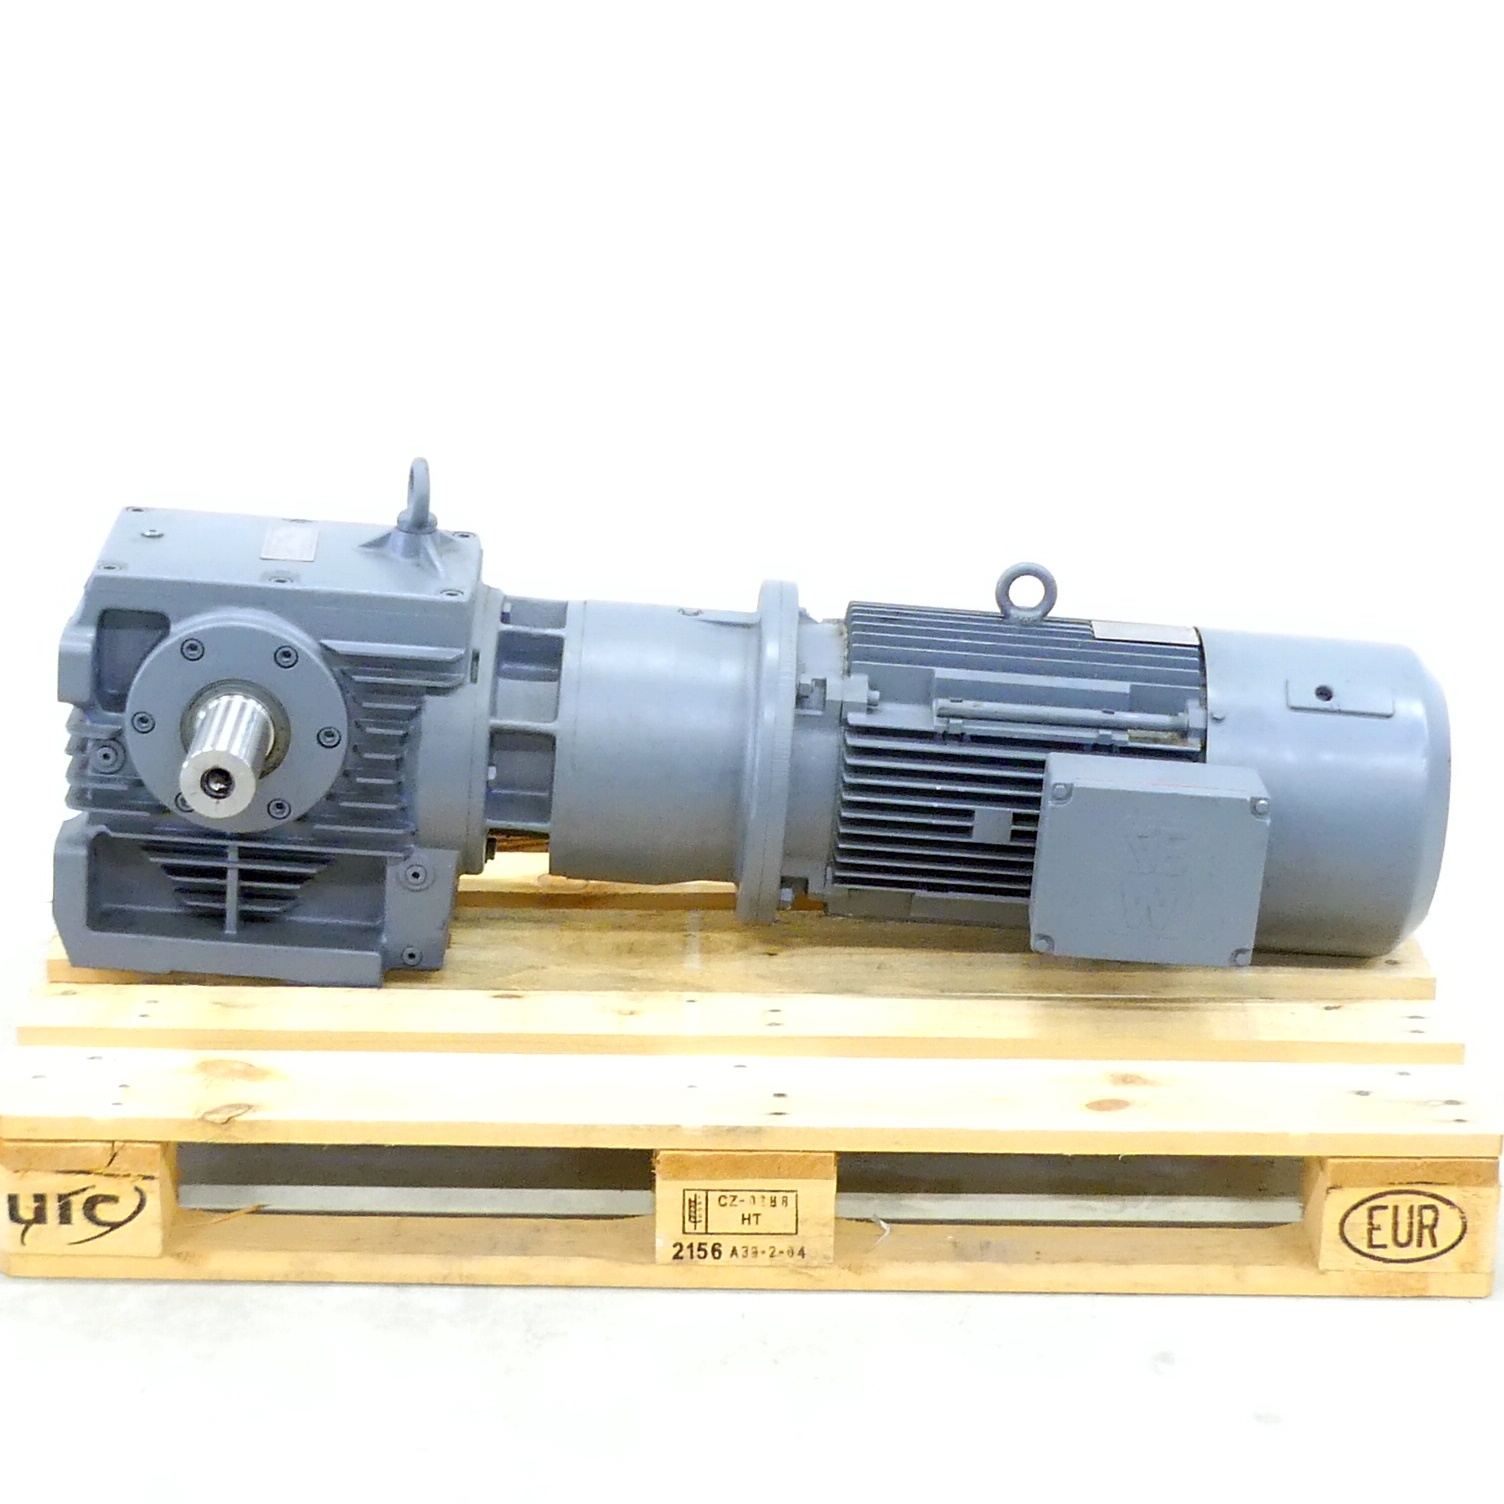 Gear motor DFV132ML-4BM-HR-TF 